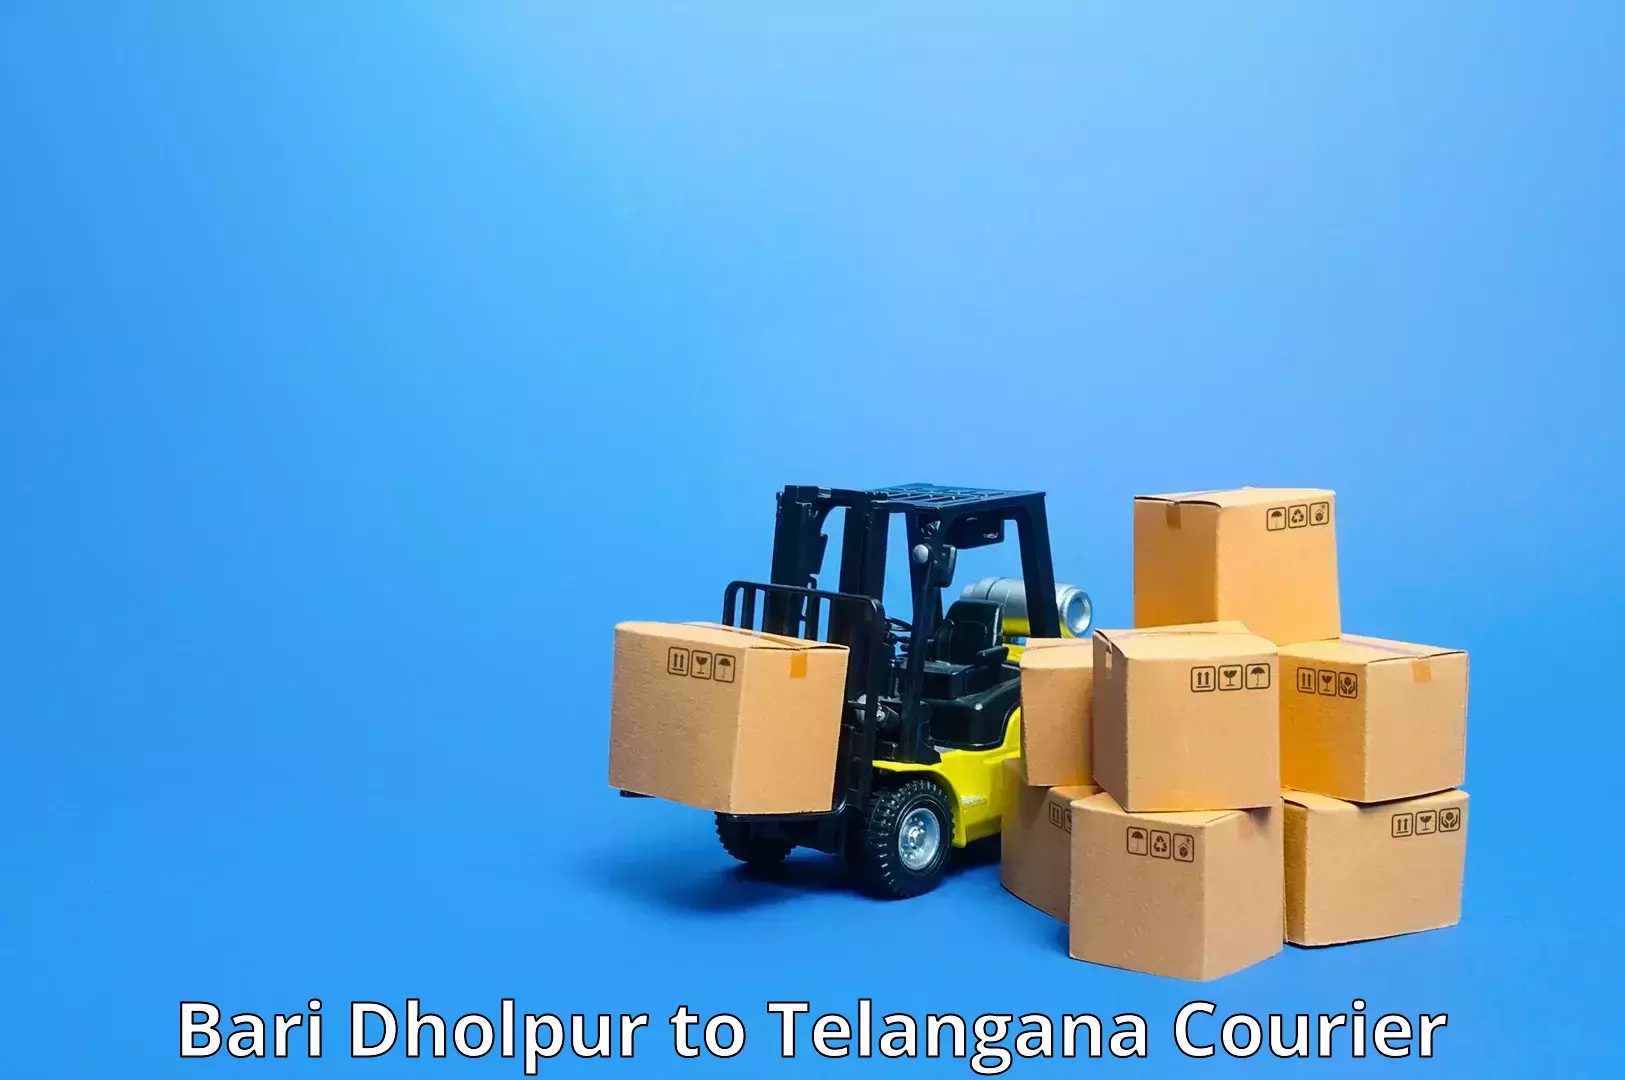 Advanced shipping network Bari Dholpur to Telangana